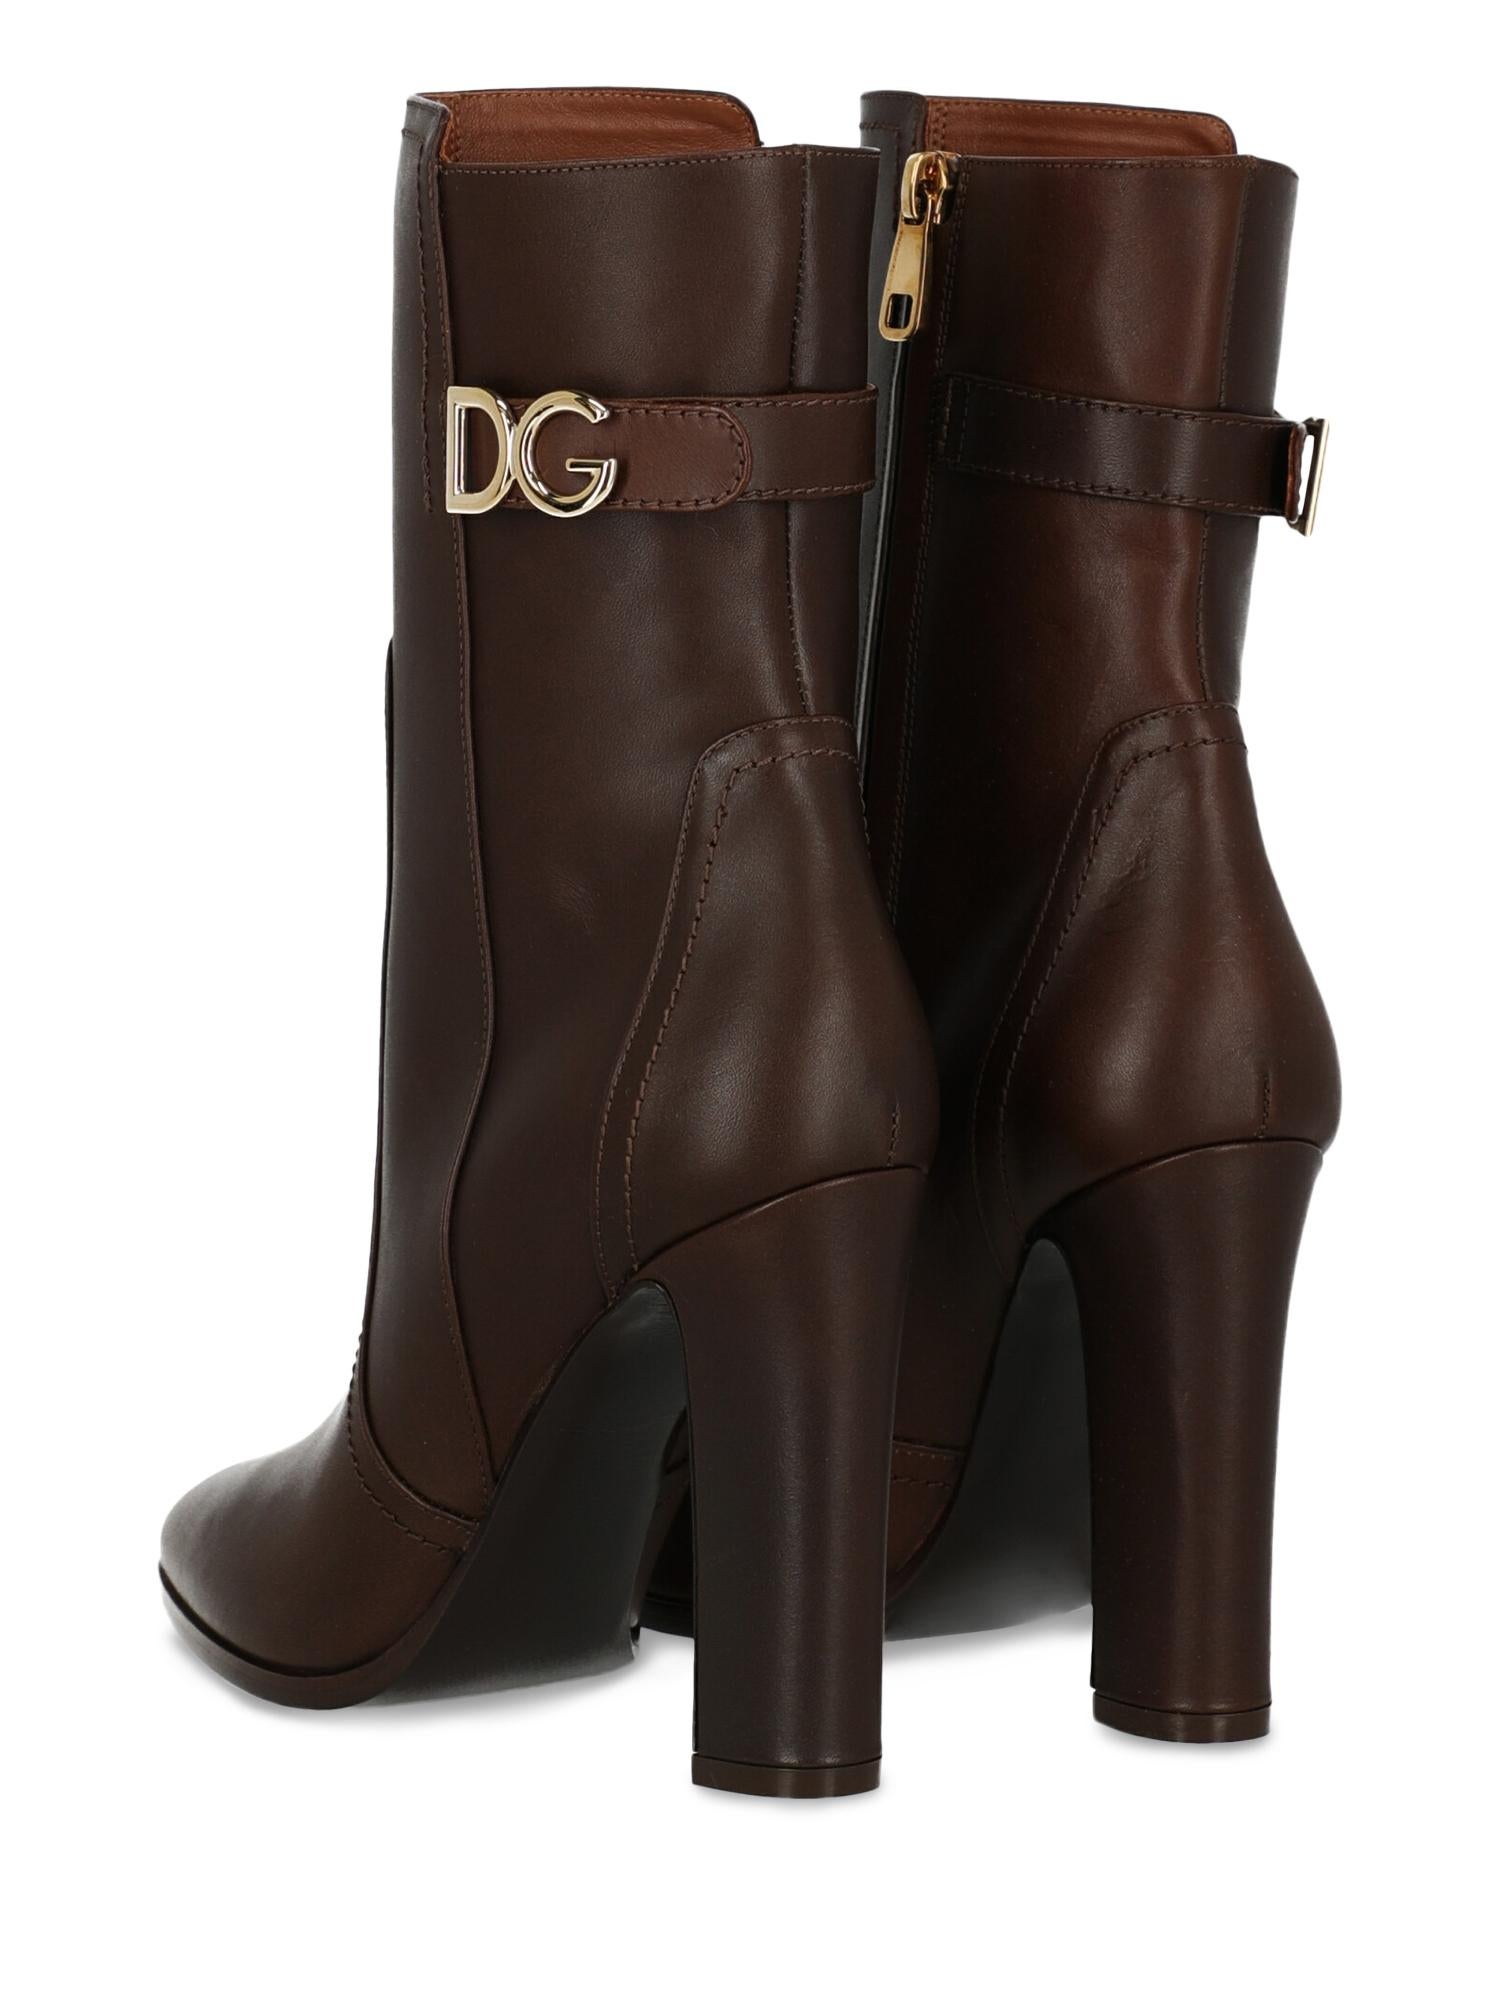 d&g womens boots